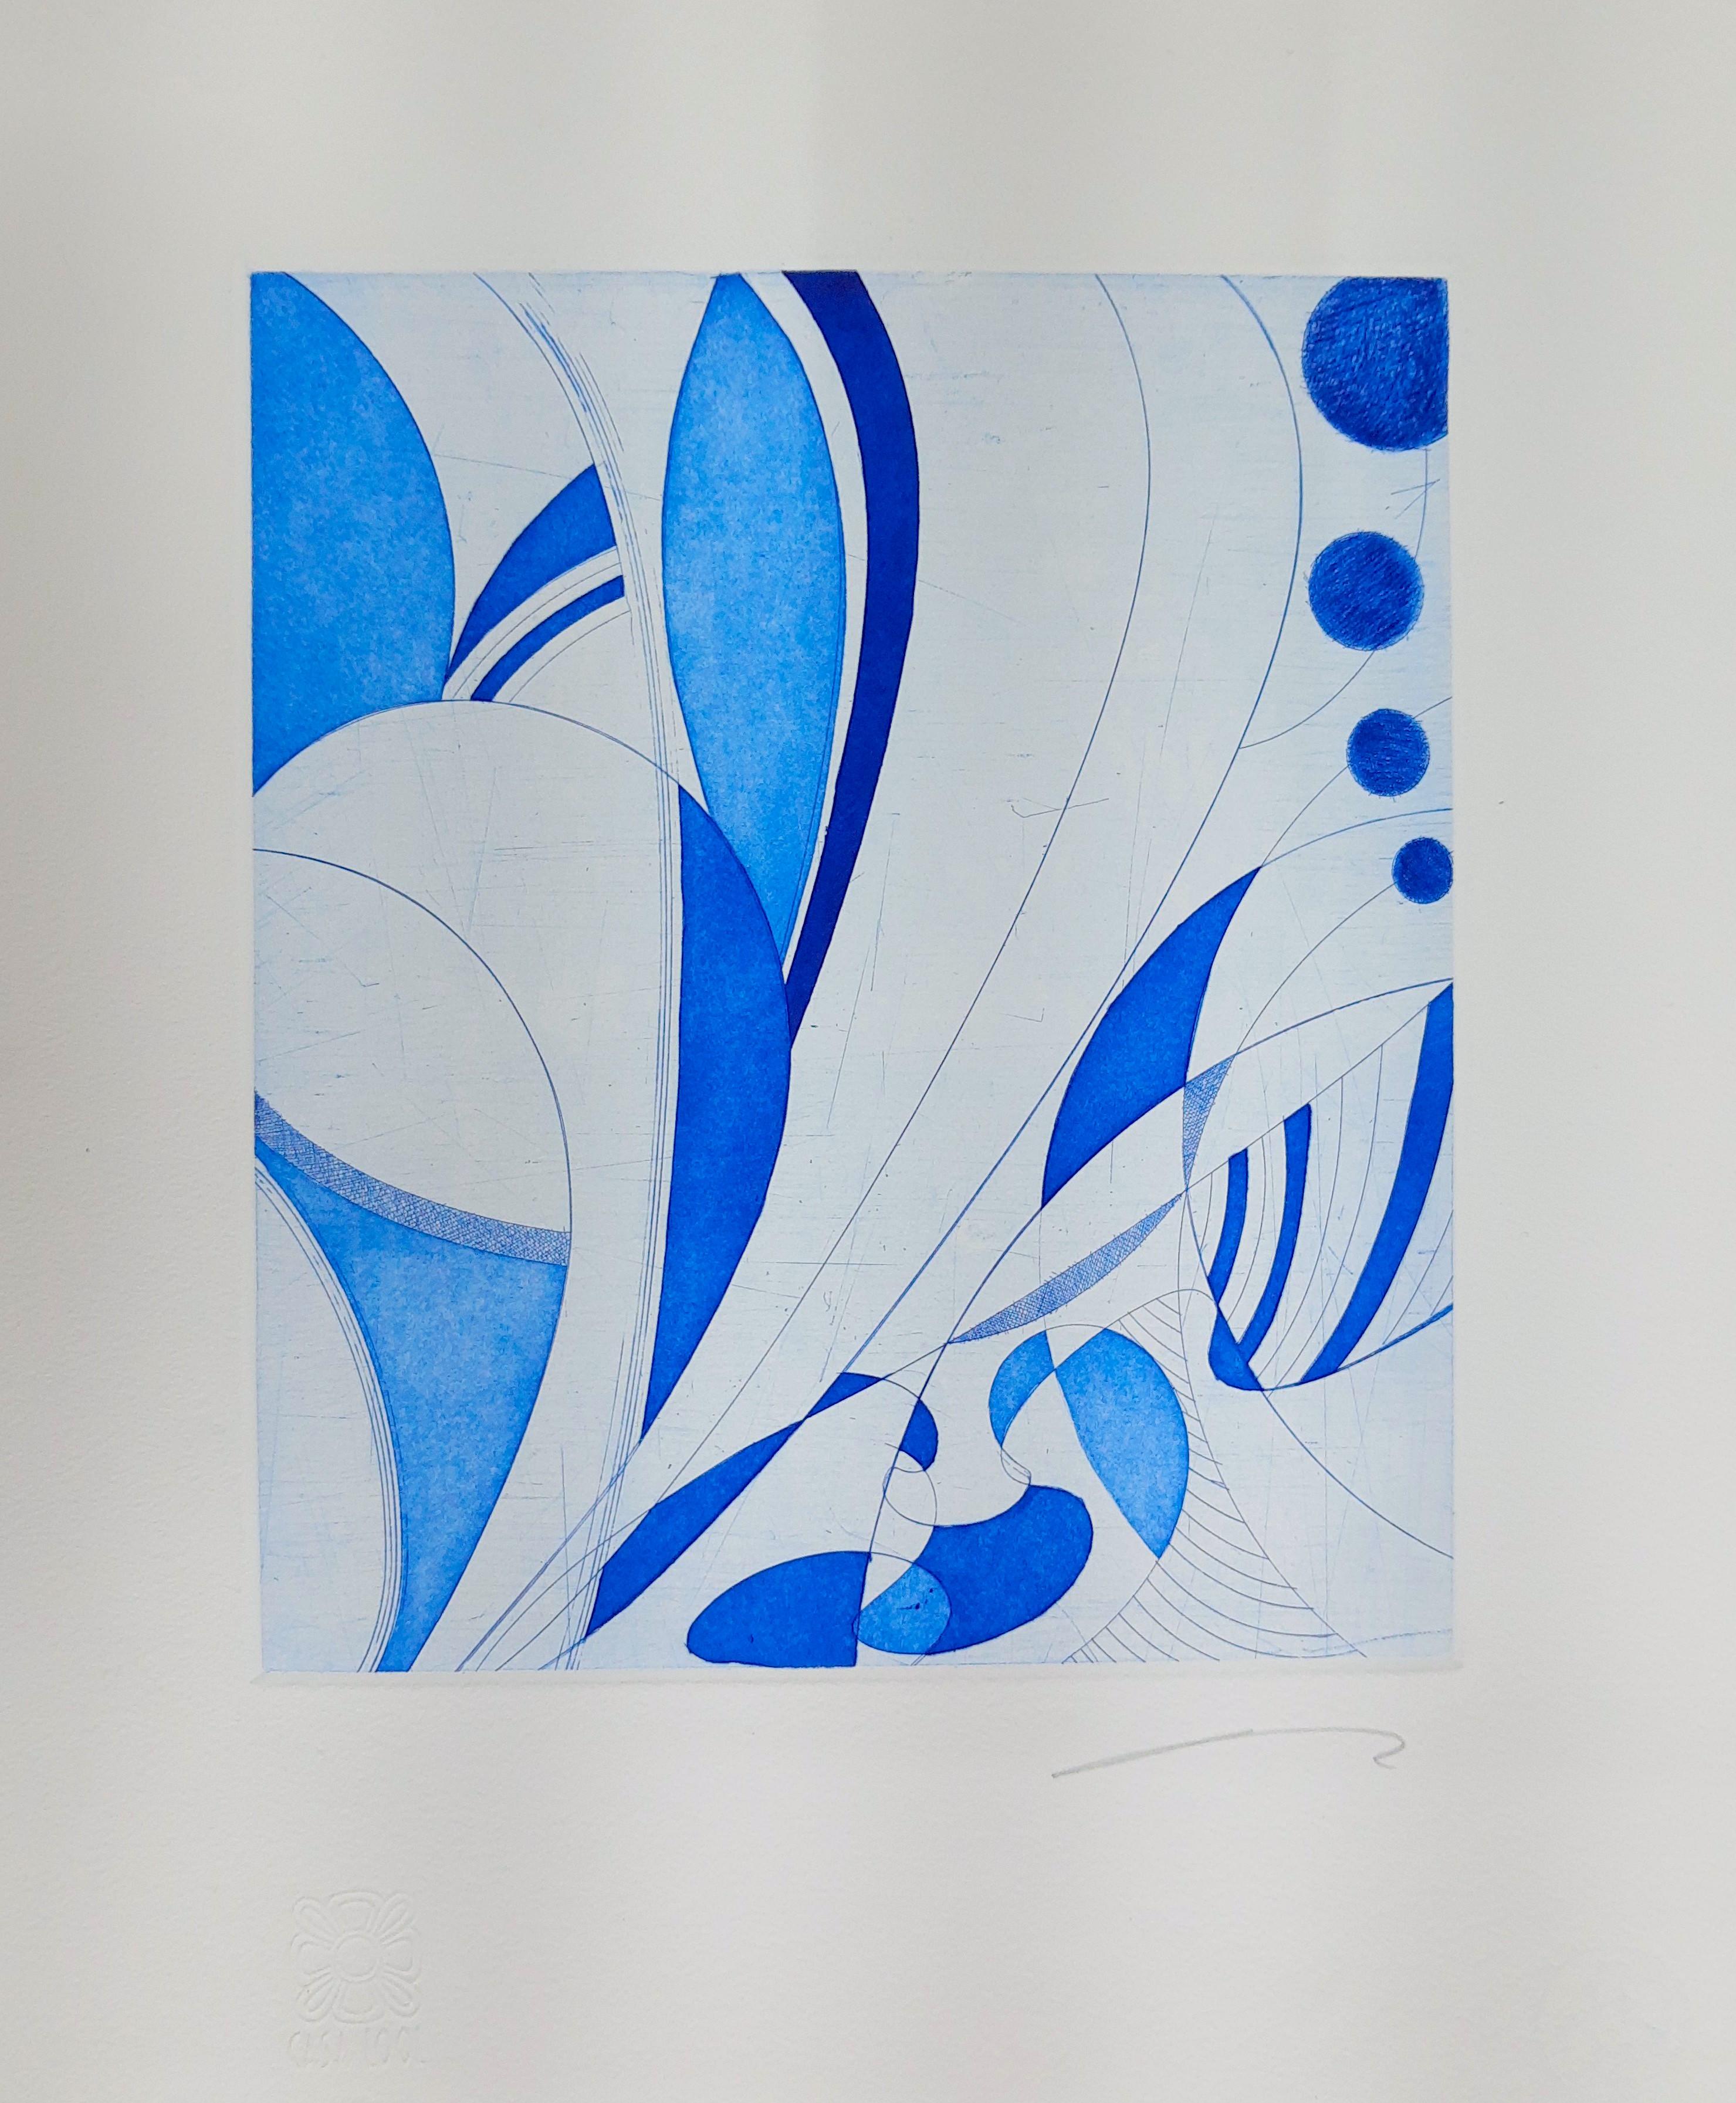 Nicolás Guzmán Abstract Print - "Blue lines" contemporary engraving print abstract blue lines 